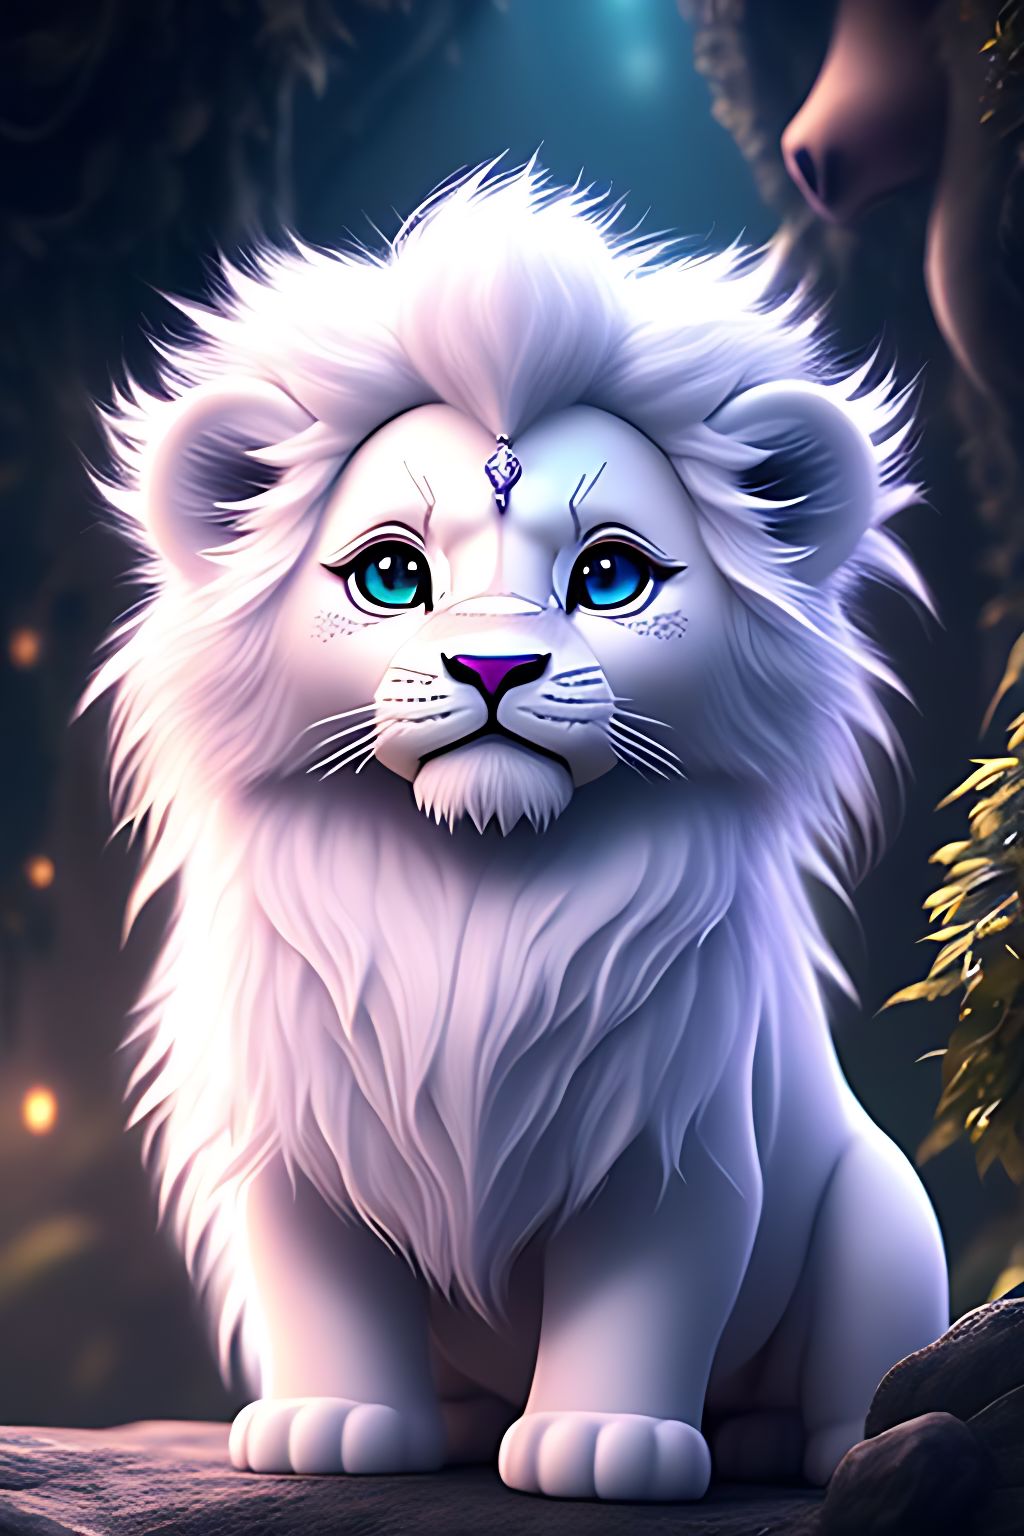 White Lion: Cùng khám phá thế giới của những con sư tử trắng đầy quyến rũ. Được tạo ra từ rất ít gen, sự hiện diện của những chú sư tử trắng thực sự là một điều đặc biệt mà bạn không thể bỏ qua.